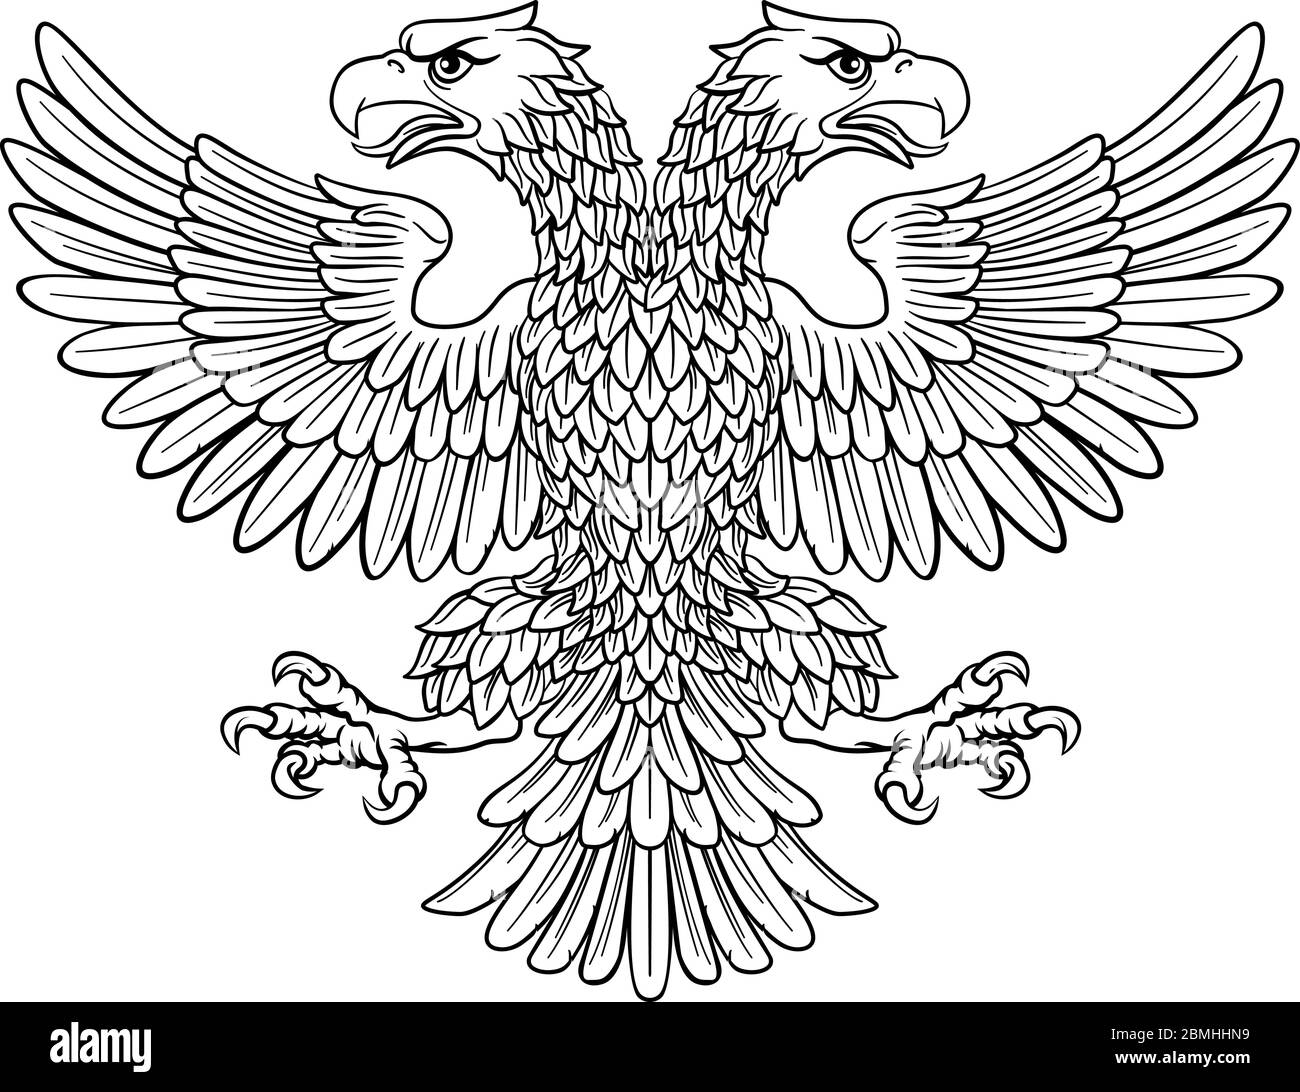 Drapeau aigle à deux têtes Banque d'images vectorielles - Alamy